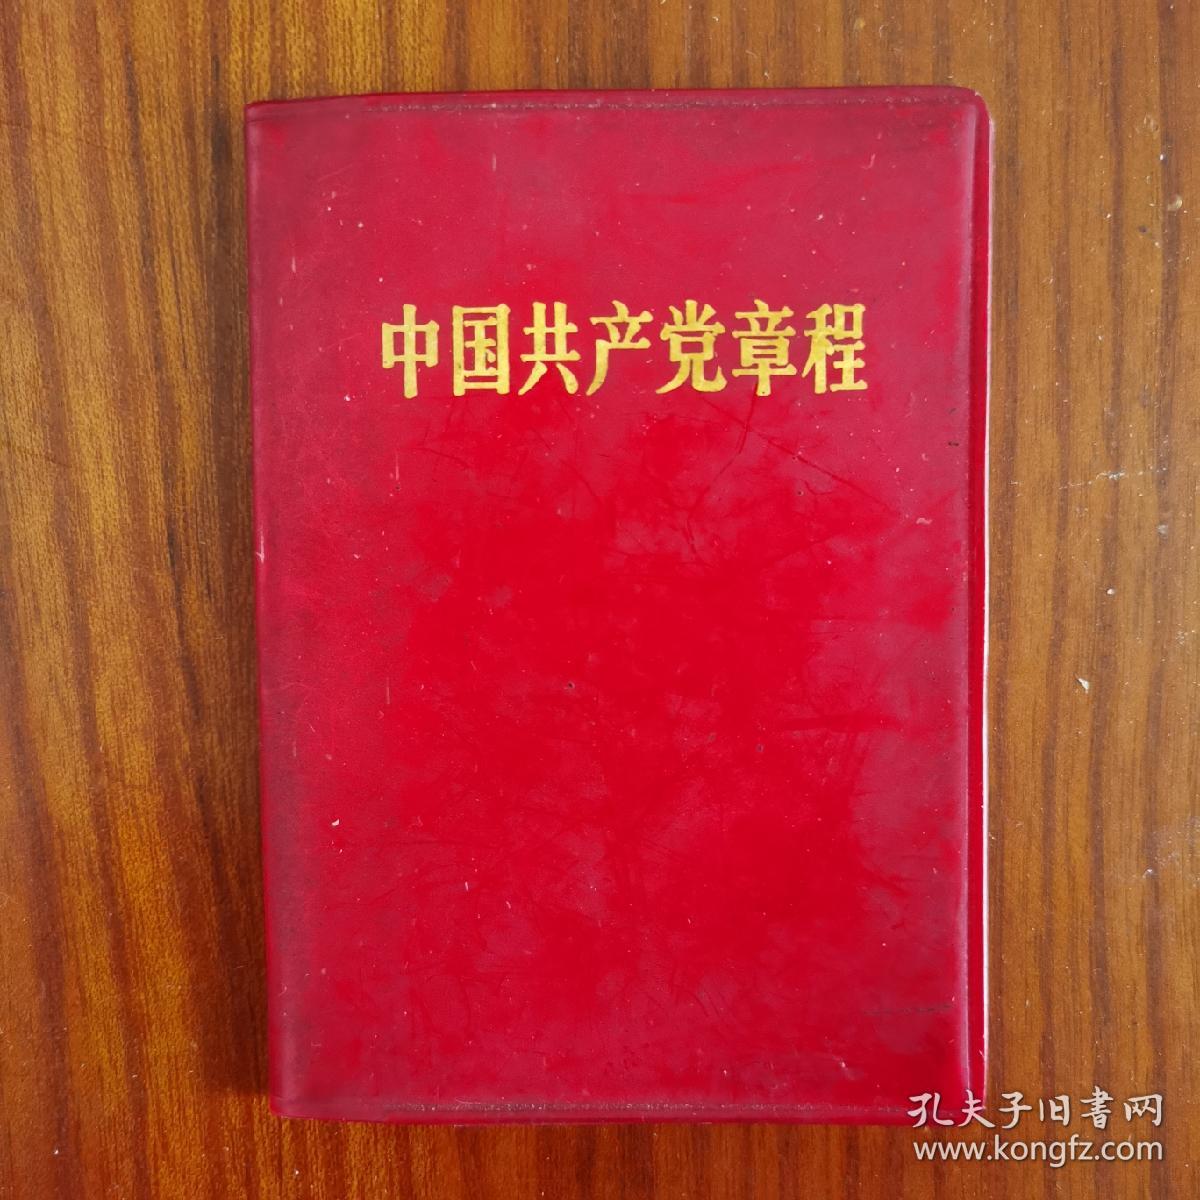 中国共产党章程 广州新华印刷厂1969年5月第一版